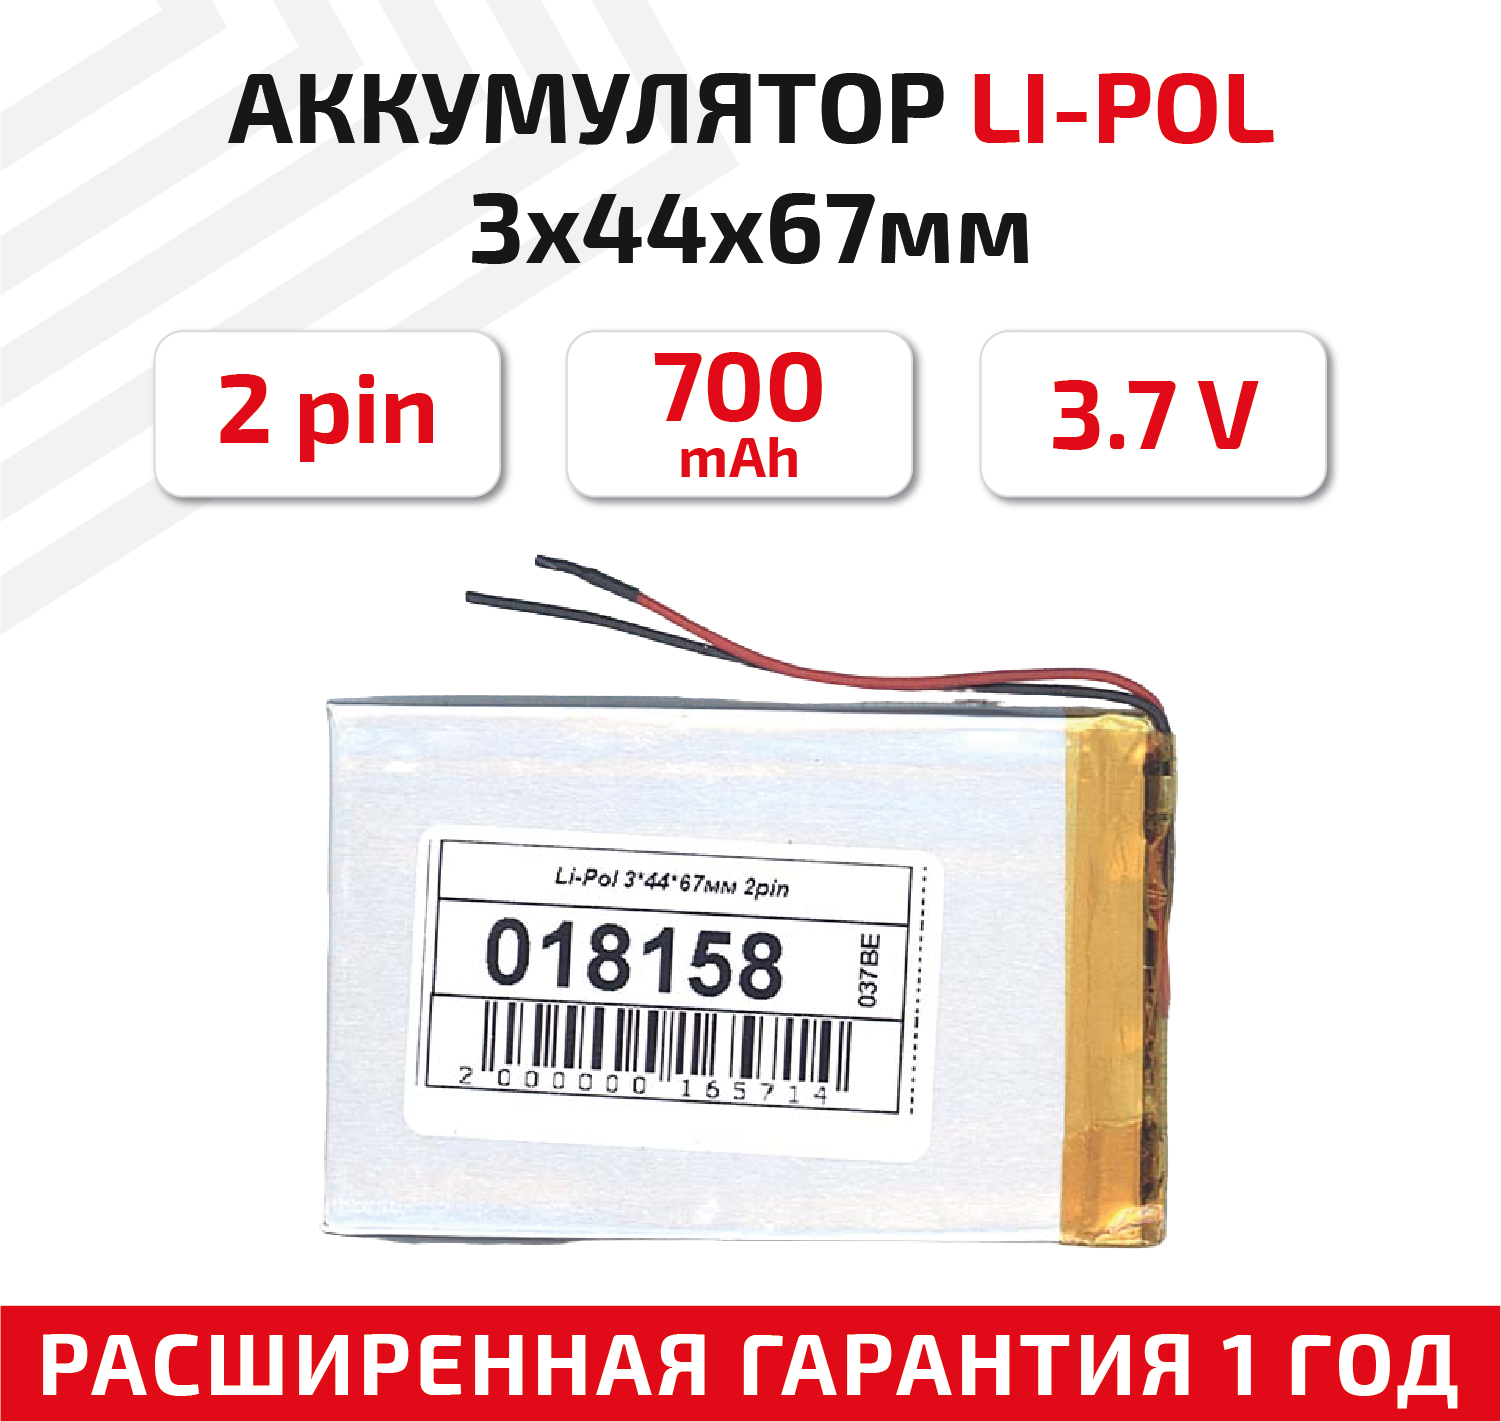 Универсальный аккумулятор (АКБ) для планшета, видеорегистратора и др, 3х44х67мм, 700мАч, 3.7В, Li-Pol, 2pin (на 2 провода)